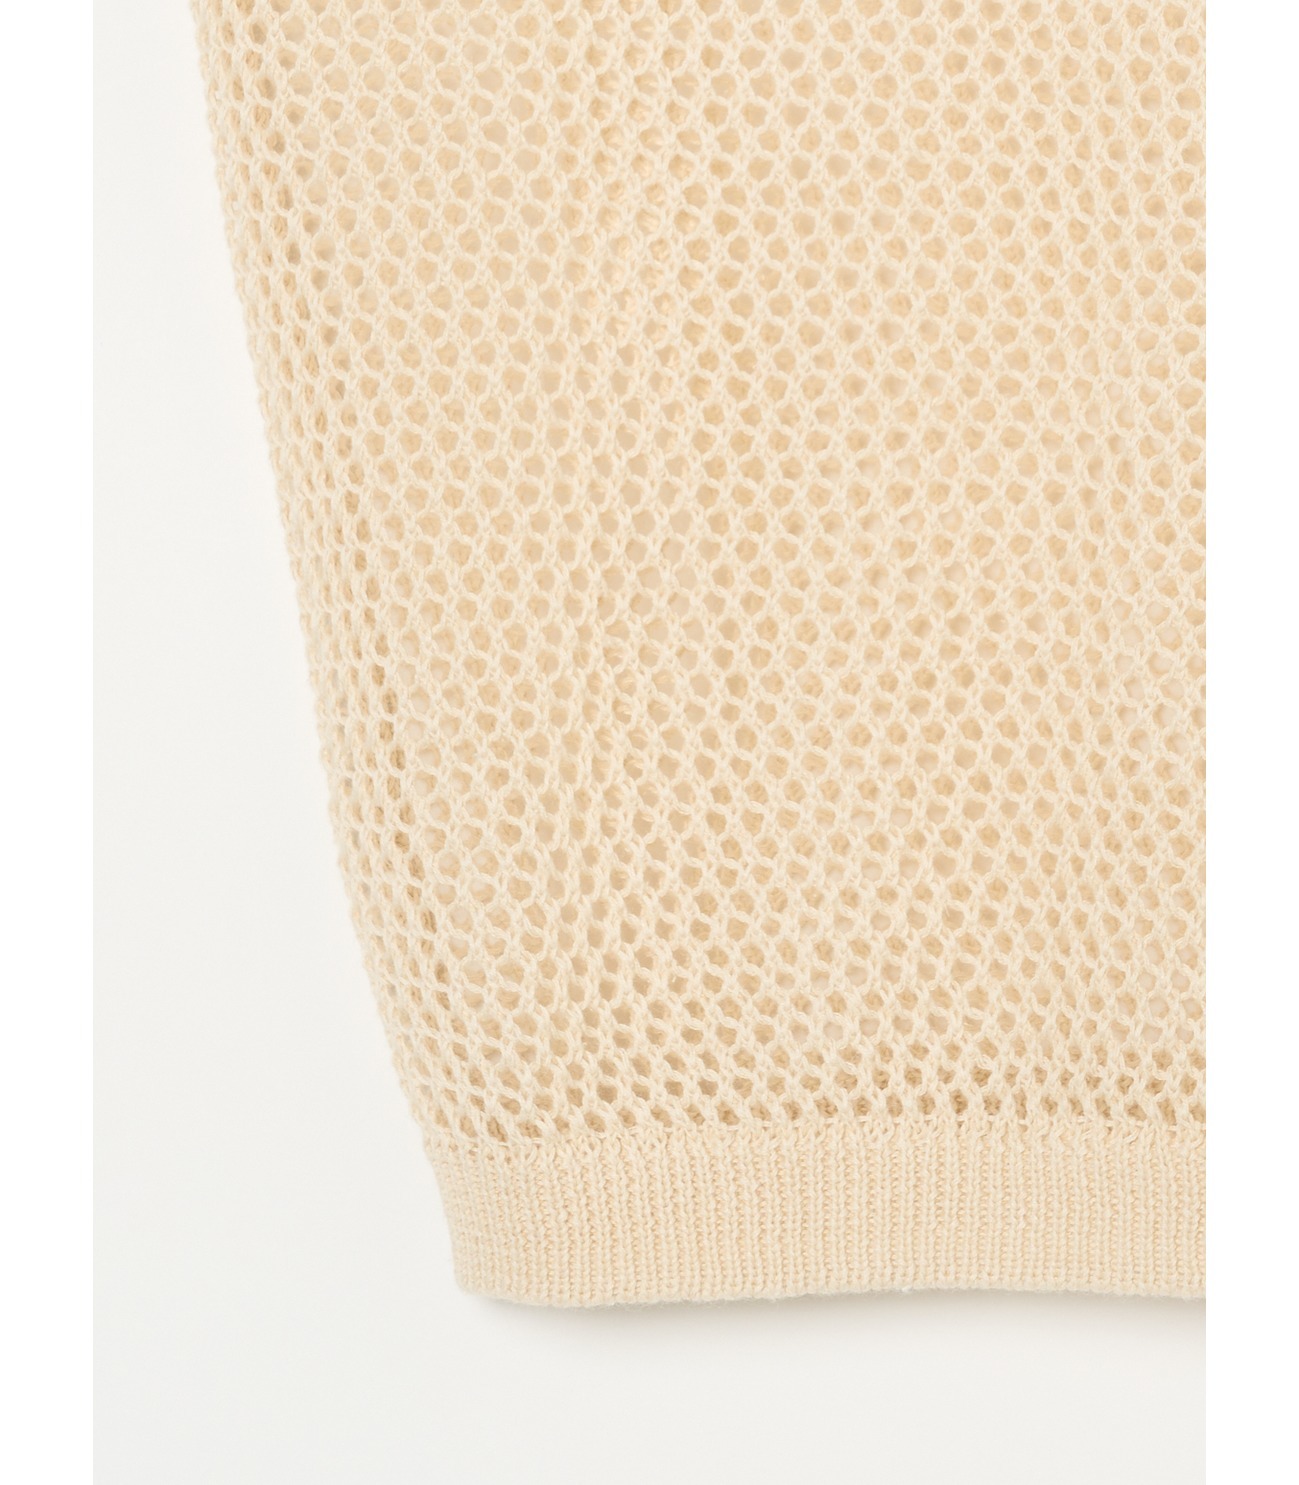 Cotton linen mesh s/s top 詳細画像 beige 4